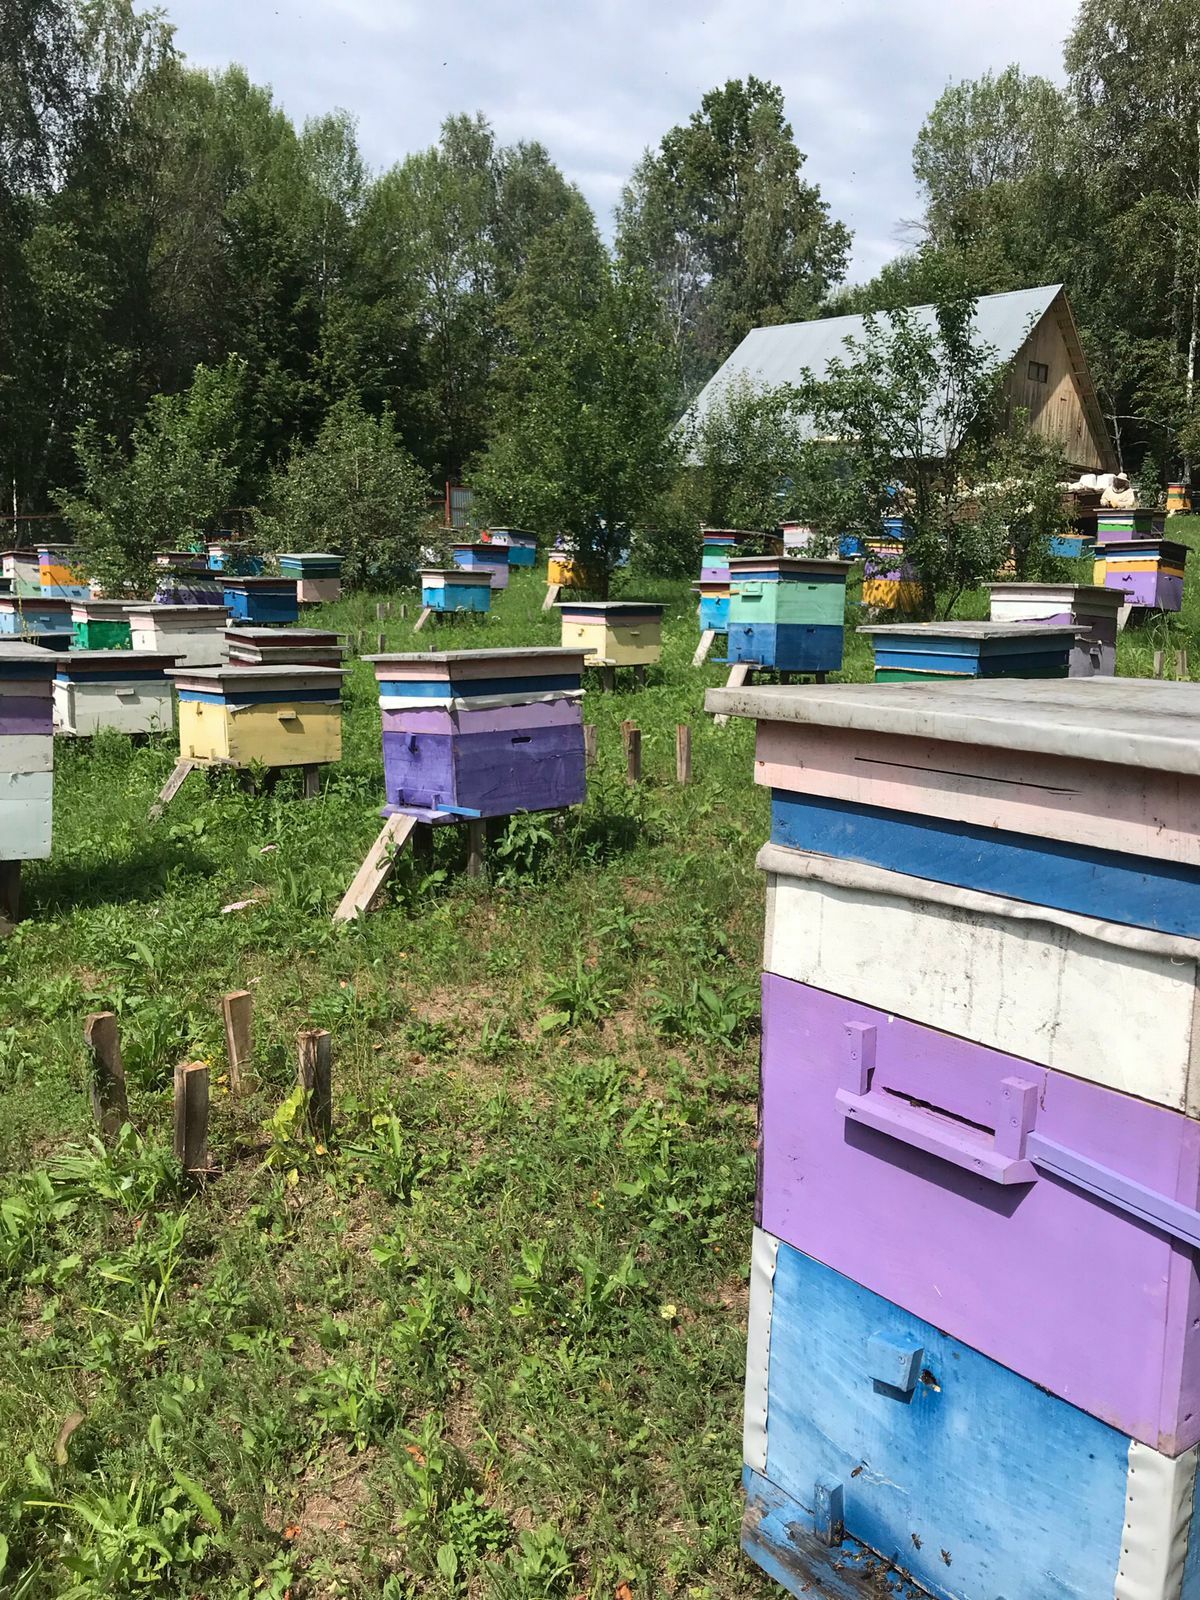 Главное – любовь к пчелам, а опыт появится со временем